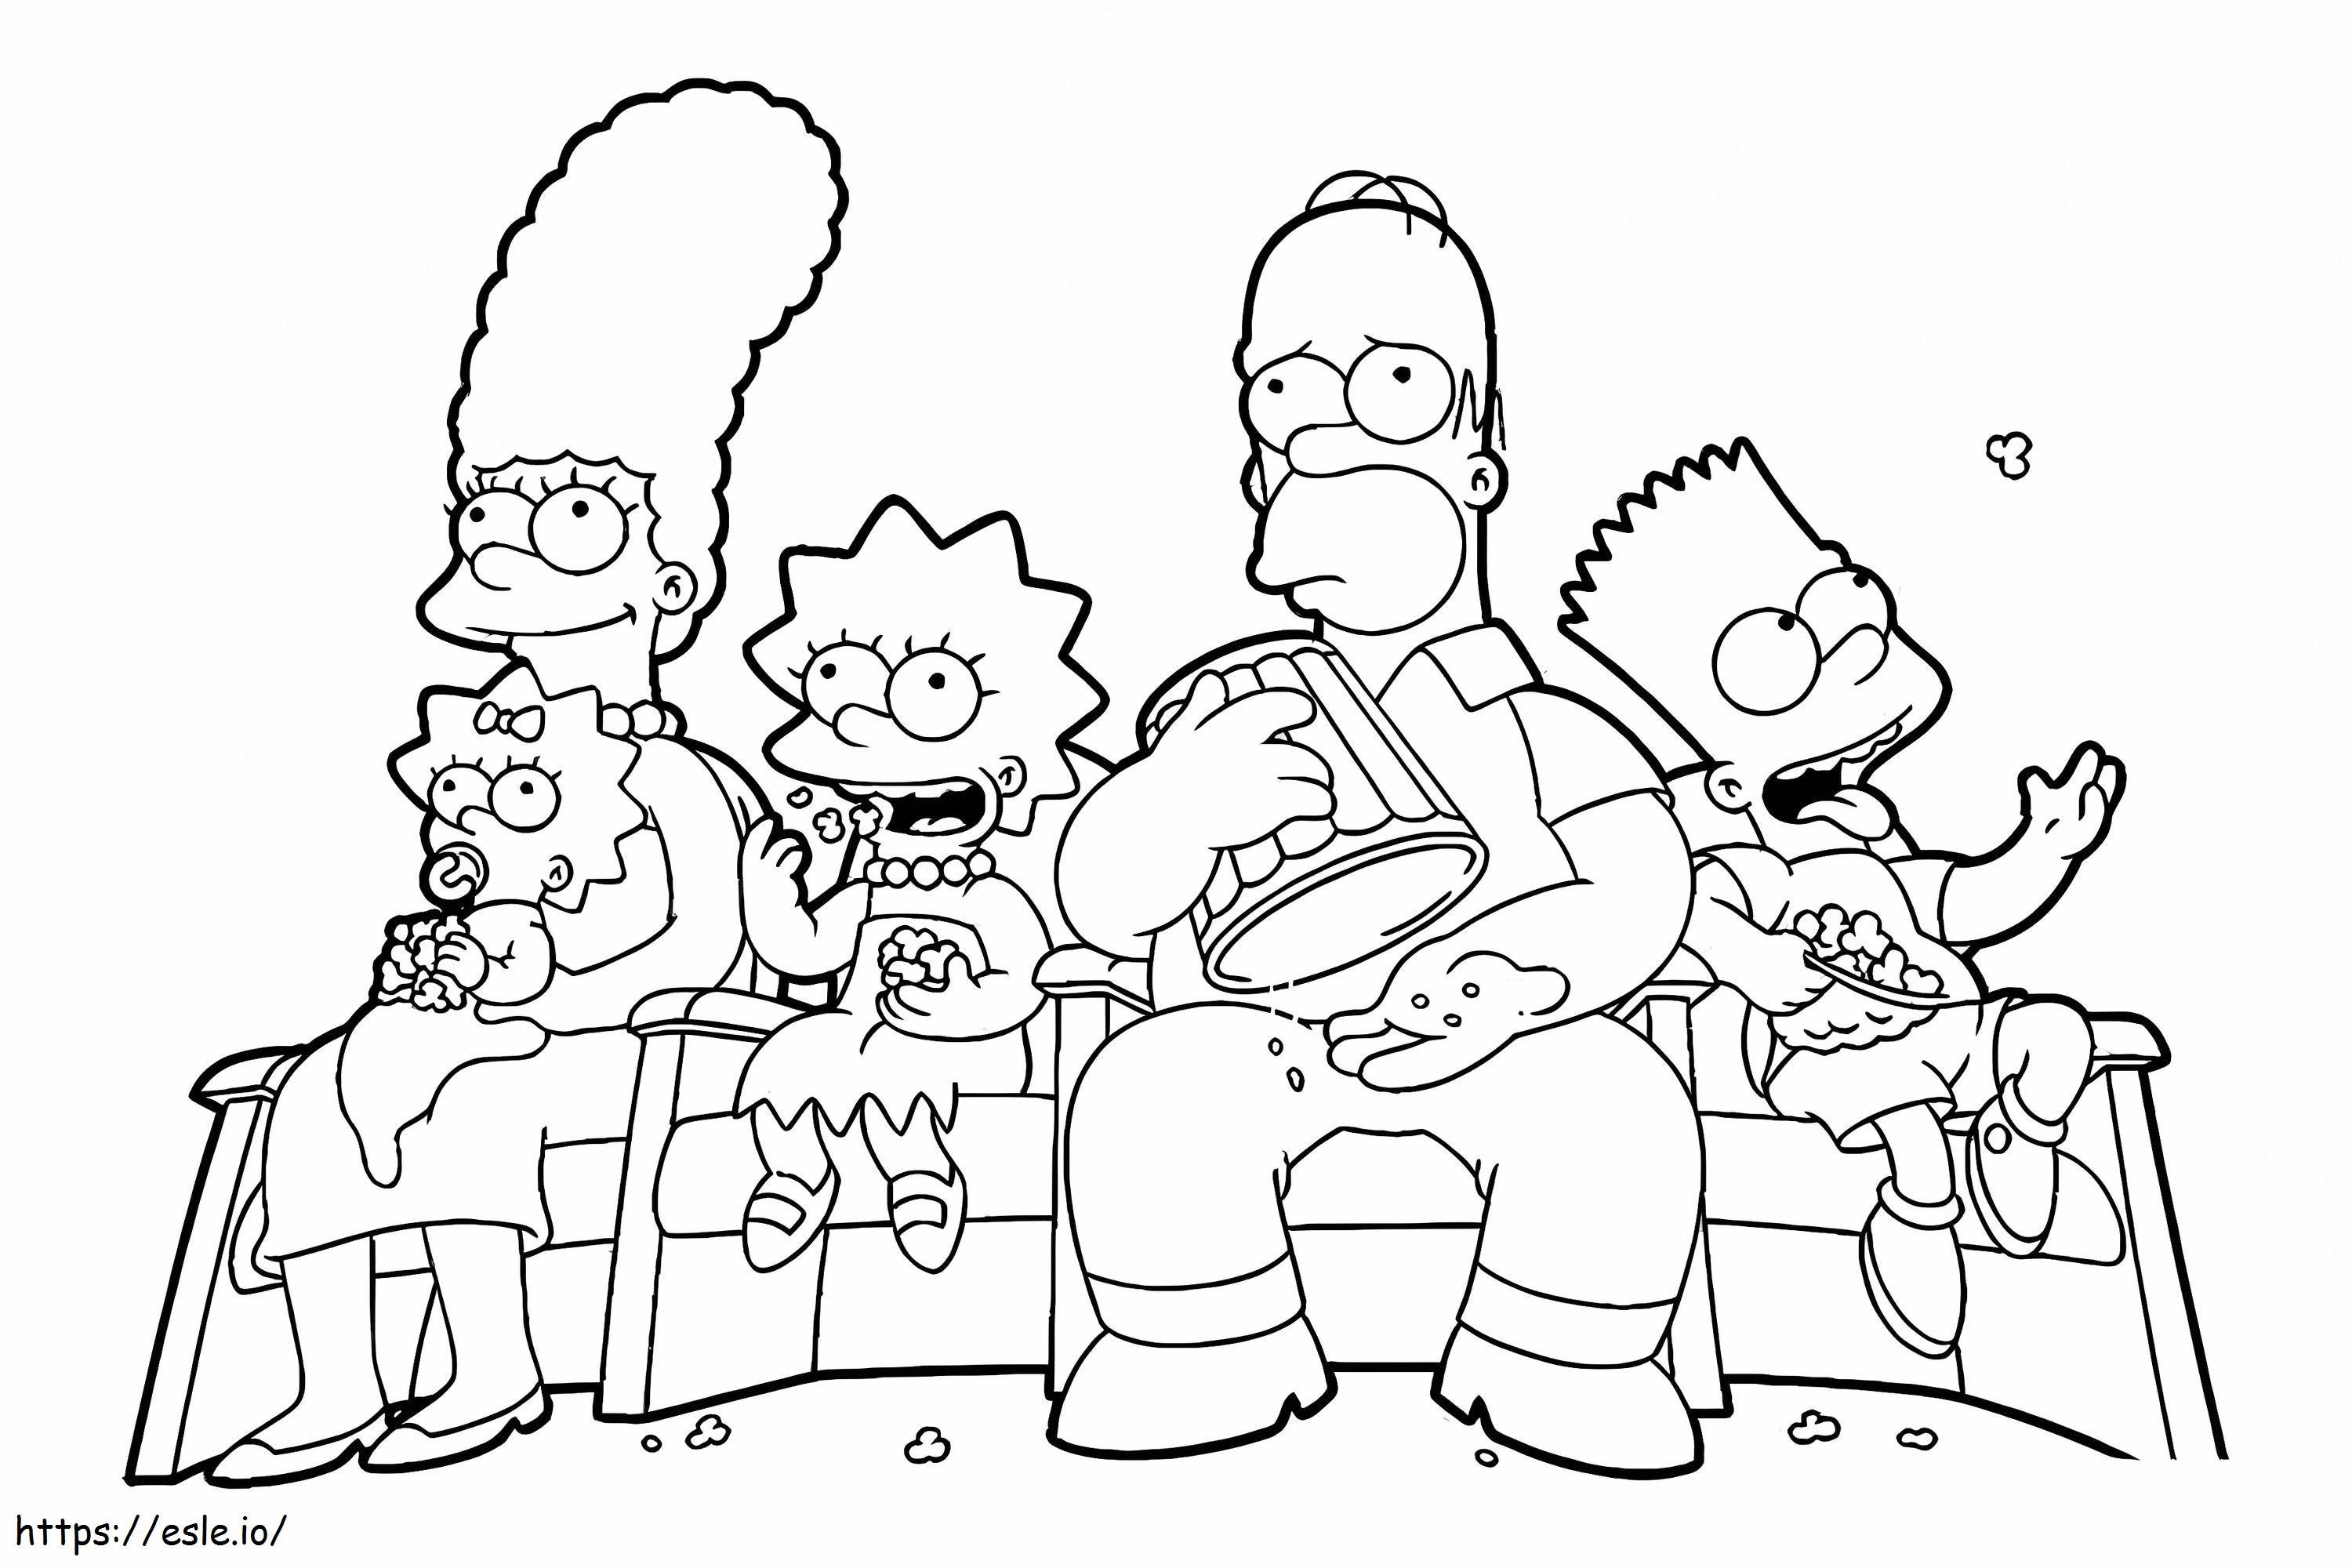 Rodzina Simpsonów ogląda film kolorowanka